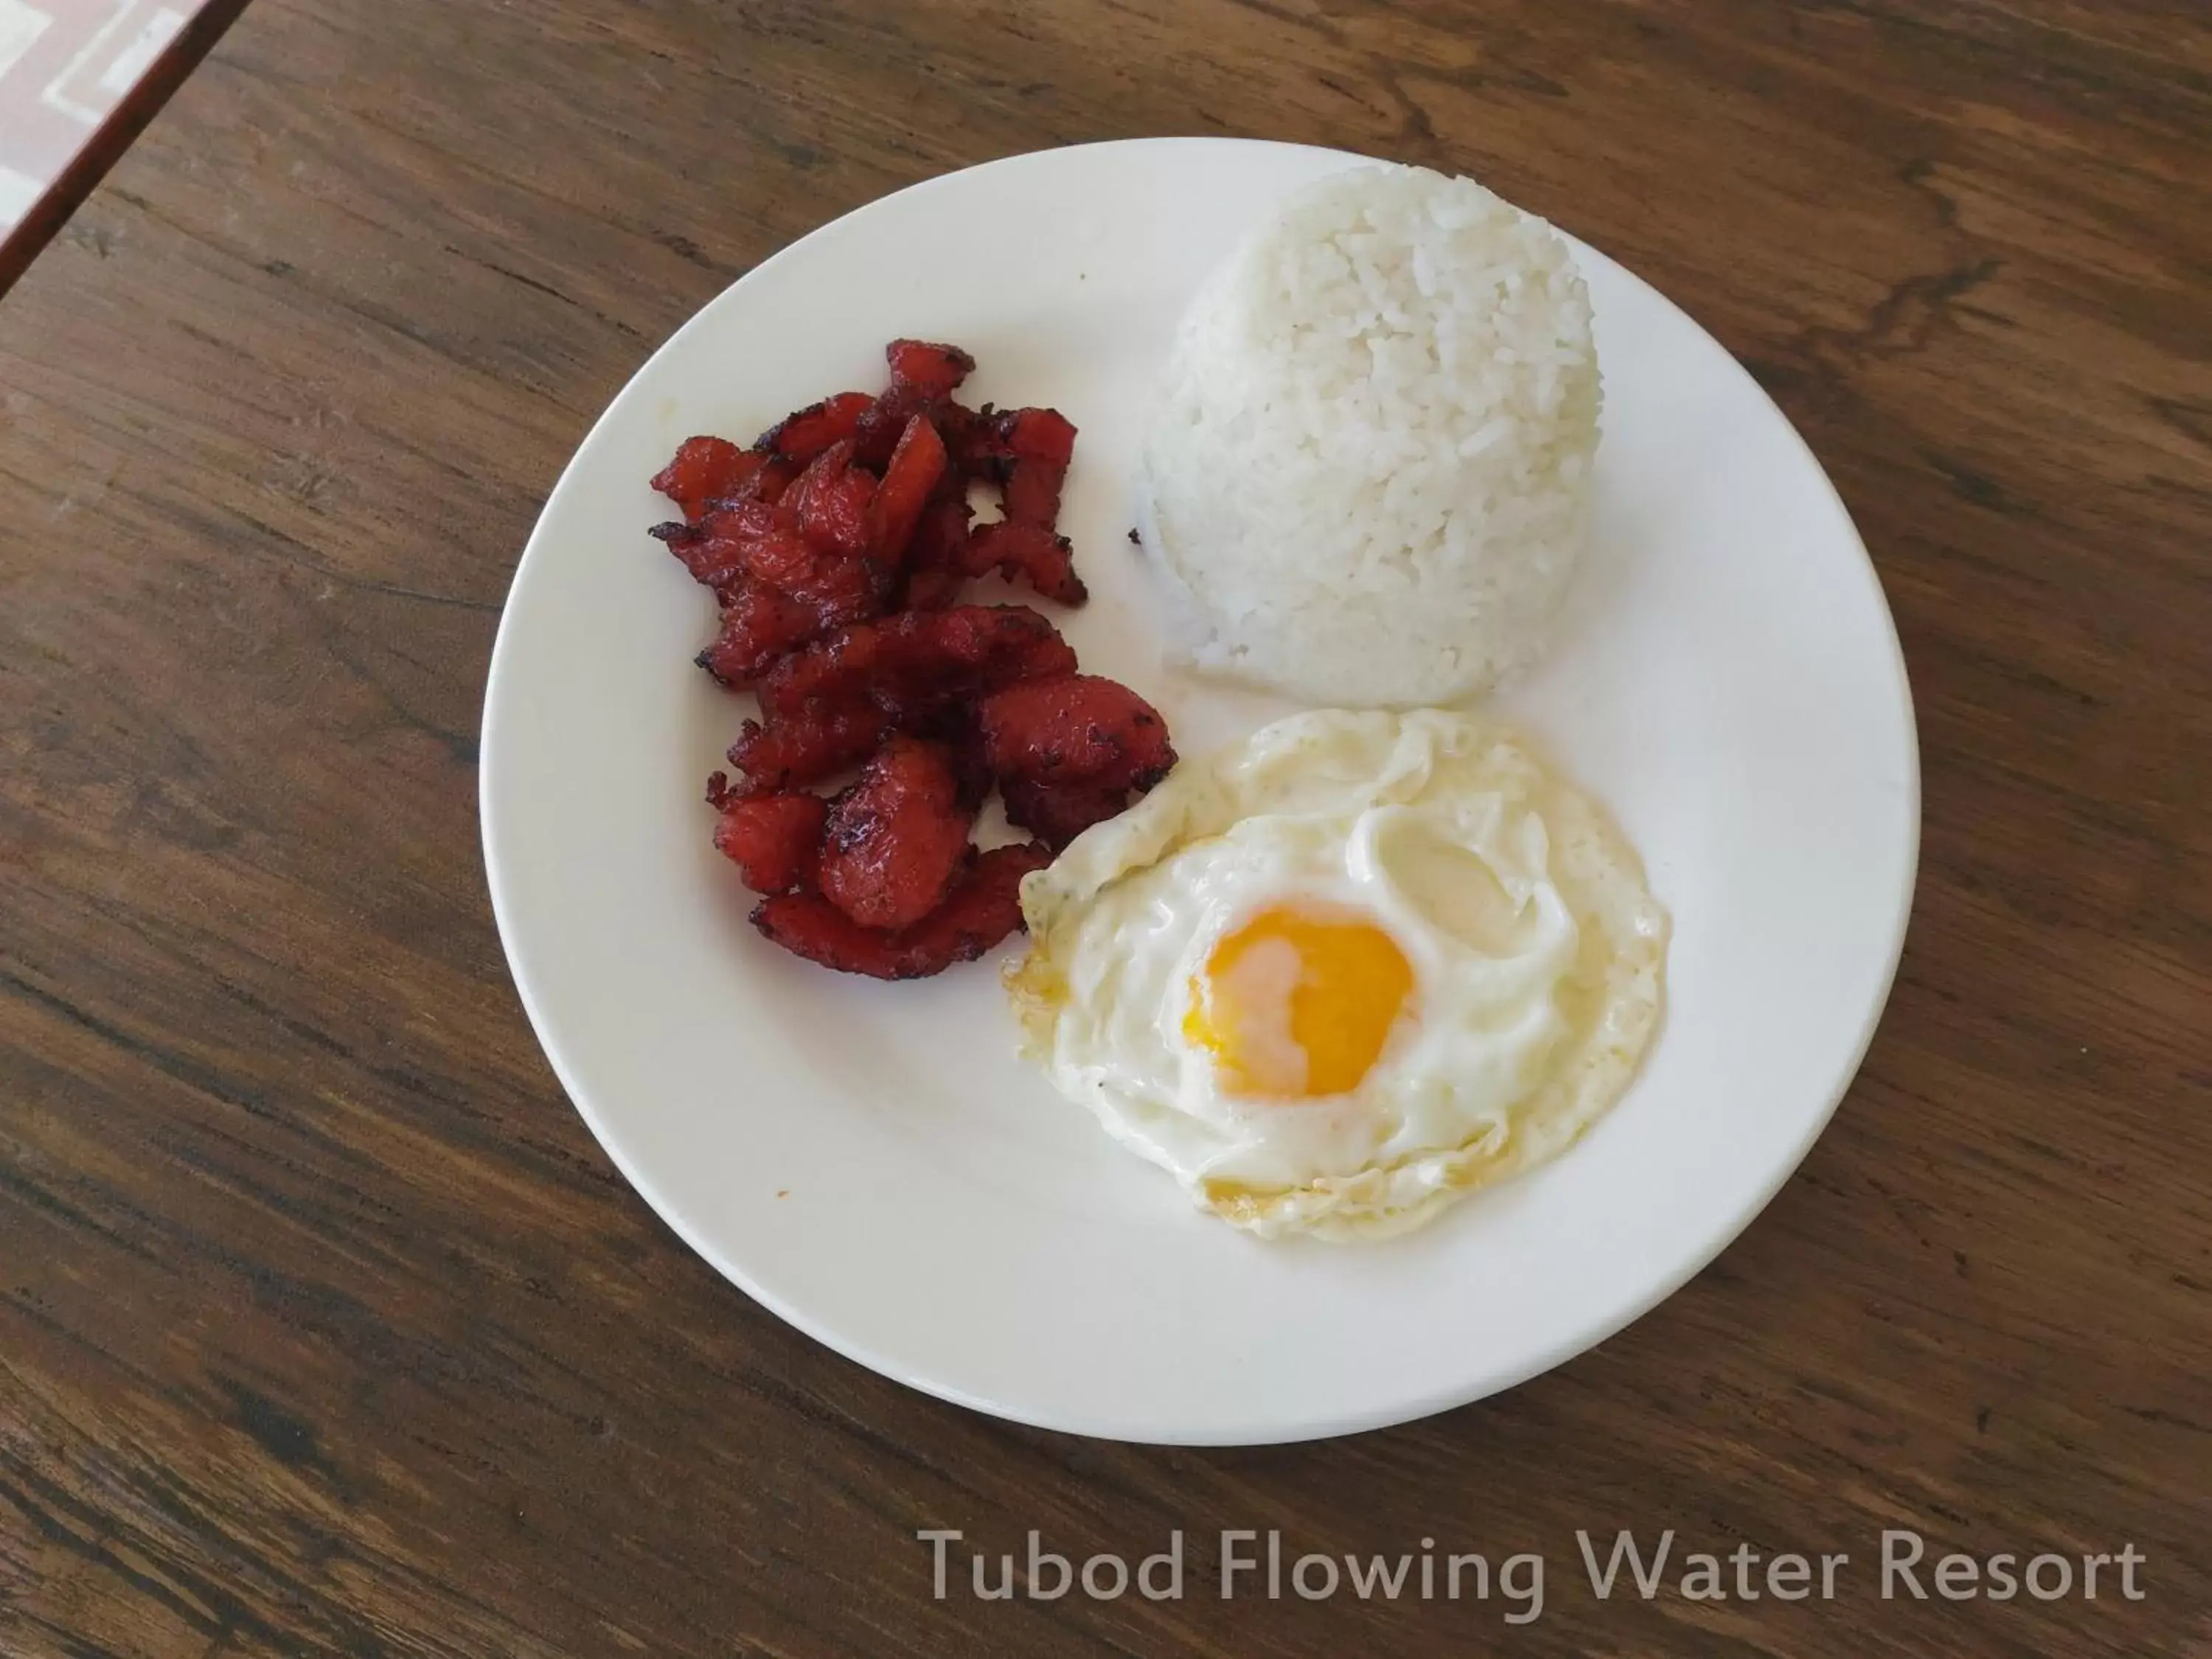 Food in Tubod Flowing Water Resort